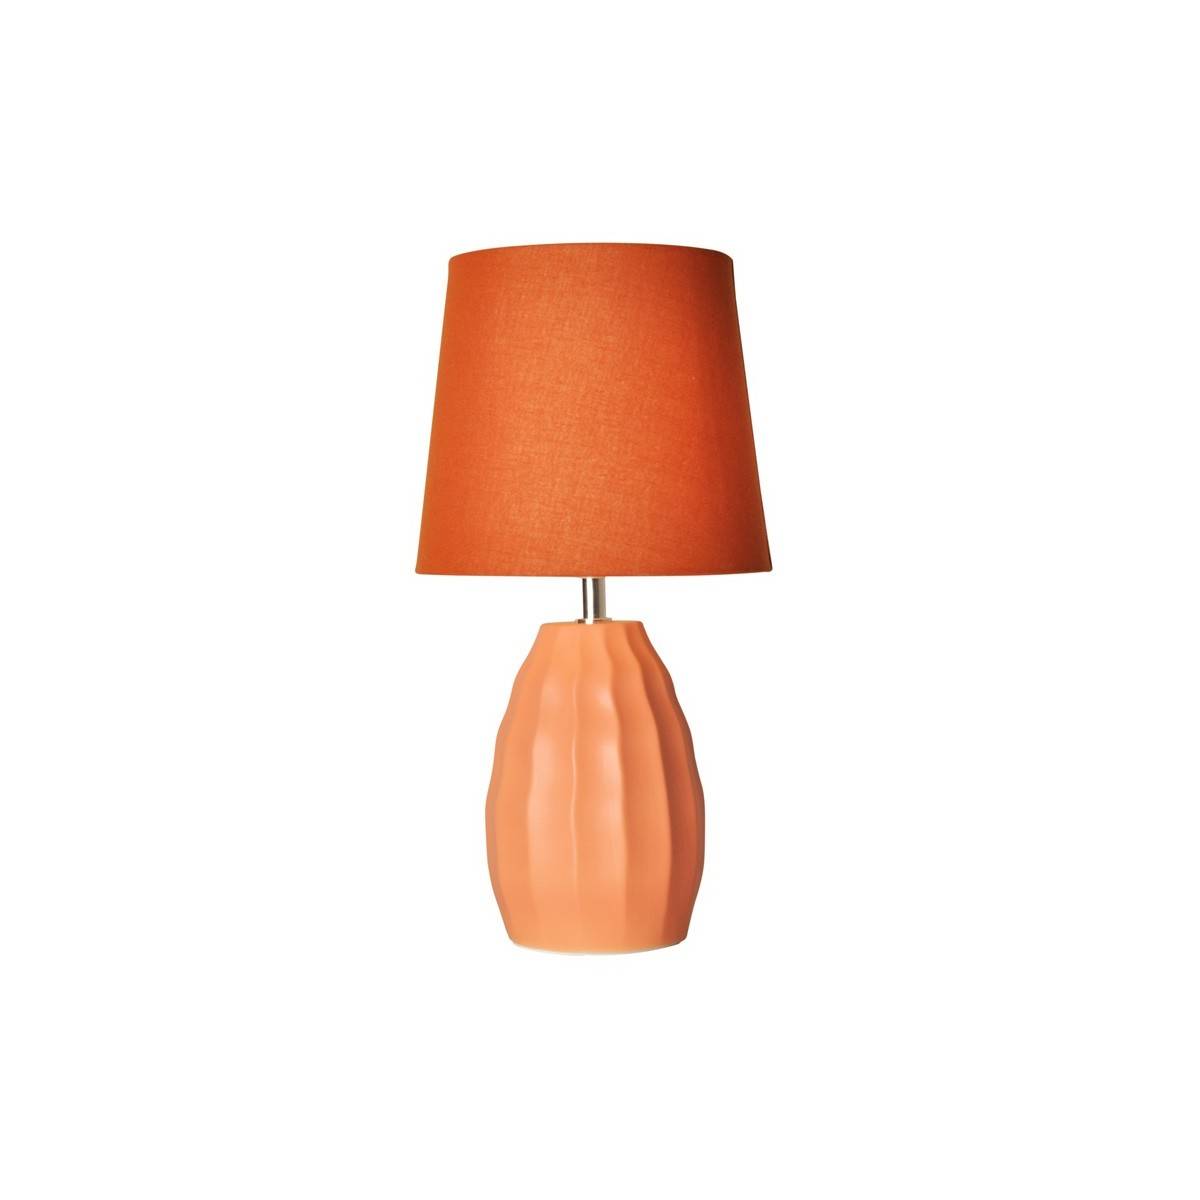 Porzellan-Tischleuchte für das Schlafzimmer - Porzellanlampe - Tischlampe Orange